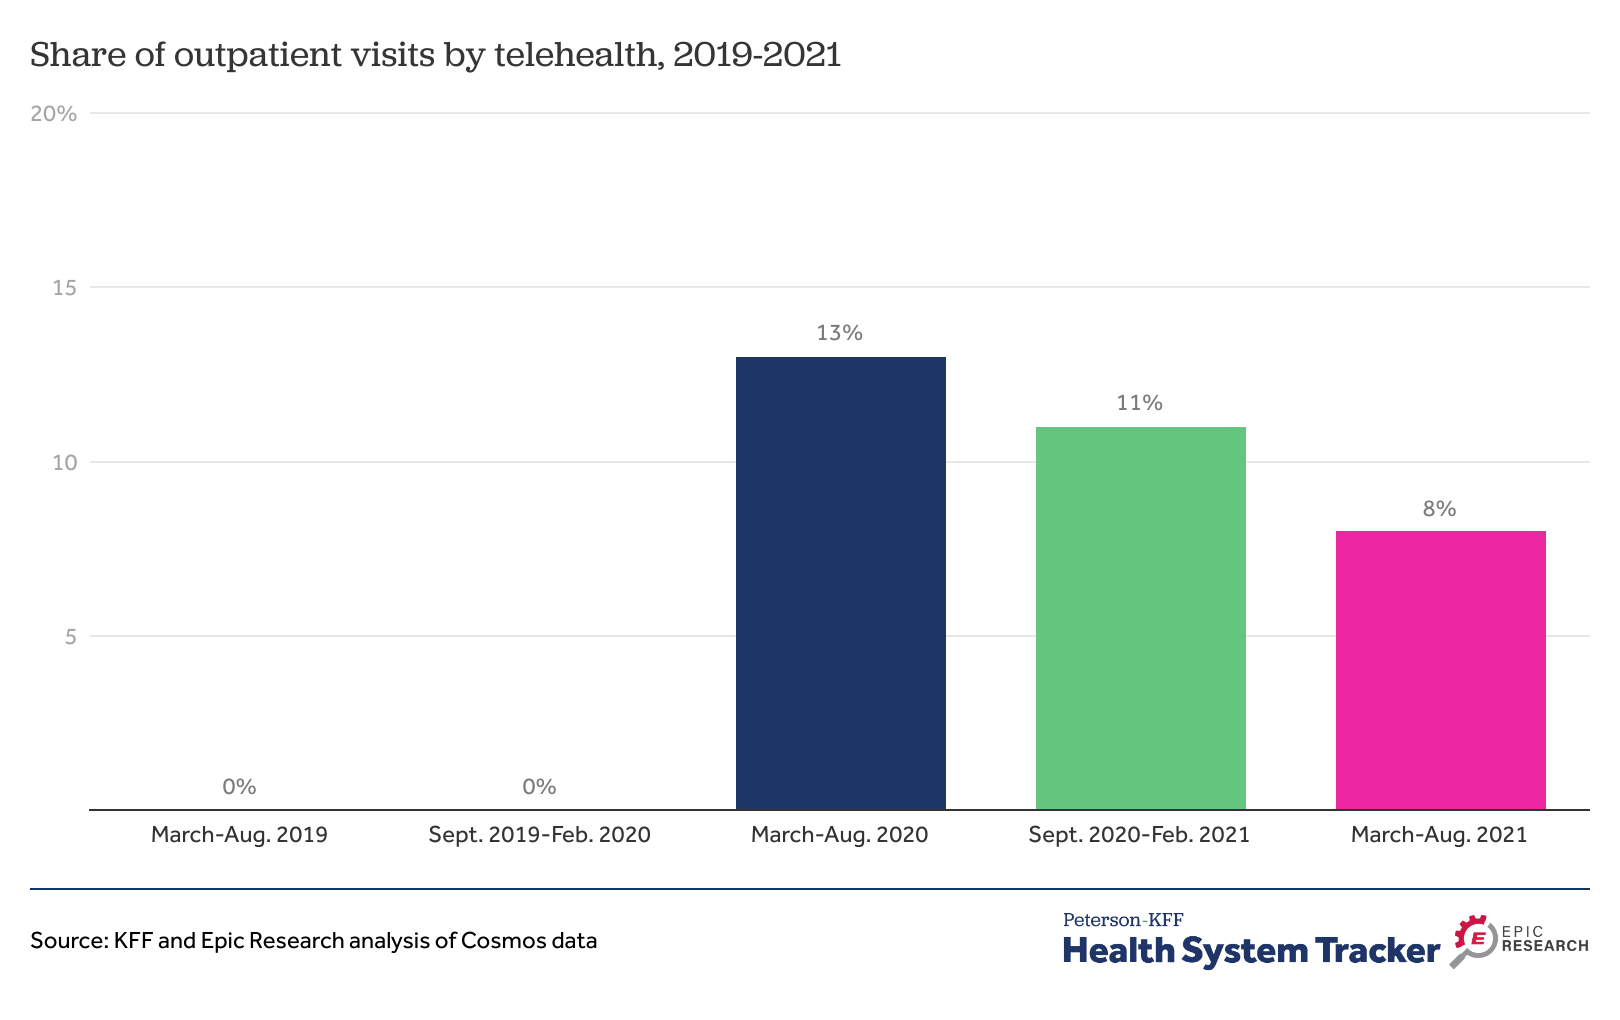 outpatient visits per 1000